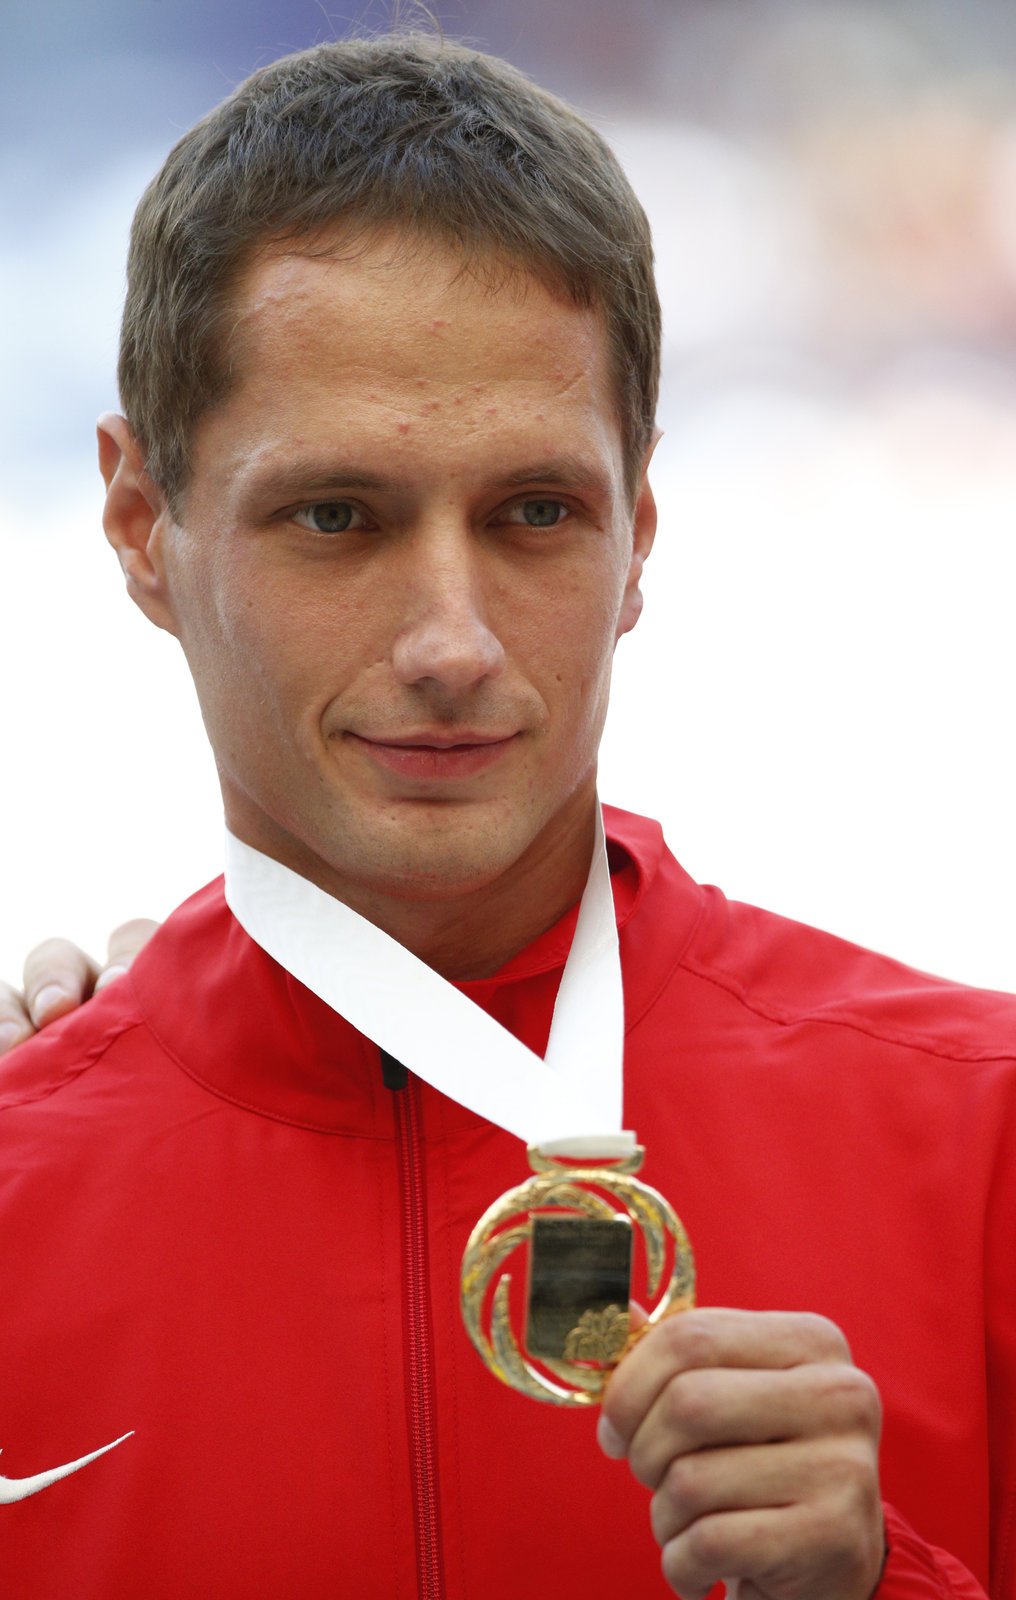 Oštěpař Vítězslav Veselý pózuje se zlatou medailí z mistrovství světa v Moskvě